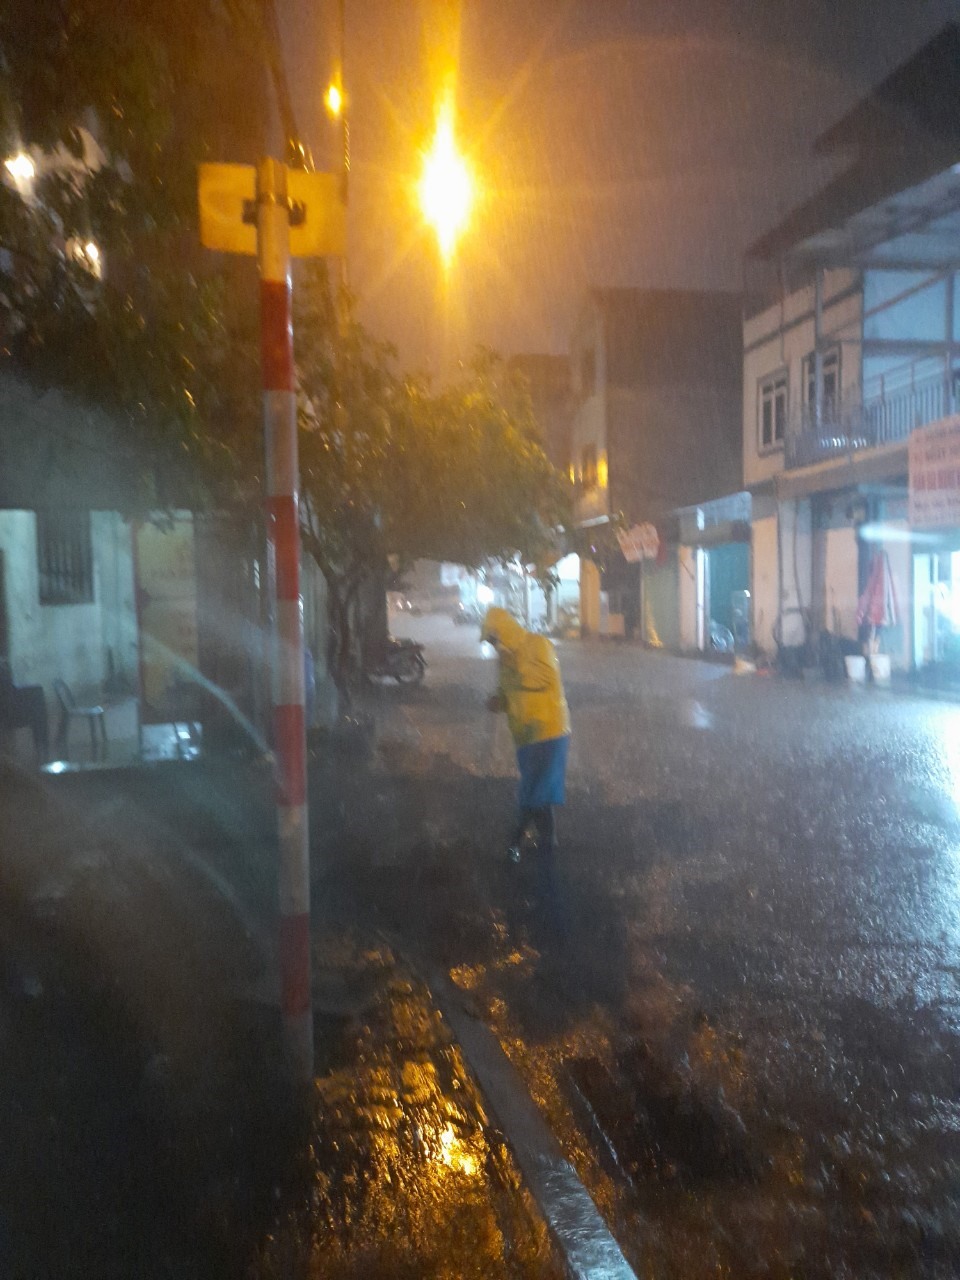 Nhiều tuyến phố tại Thủ đô đã ngập sâu trong nước sau cơn mưa lớn chiều 11.5. Công ty TNHH một thành viên Thoát nước Hà Nội đã cắt cử lực lượng ứng trực tại các nơi úng ngập, tổ chức hướng dẫn giao thông, giải quyết thoát nước.